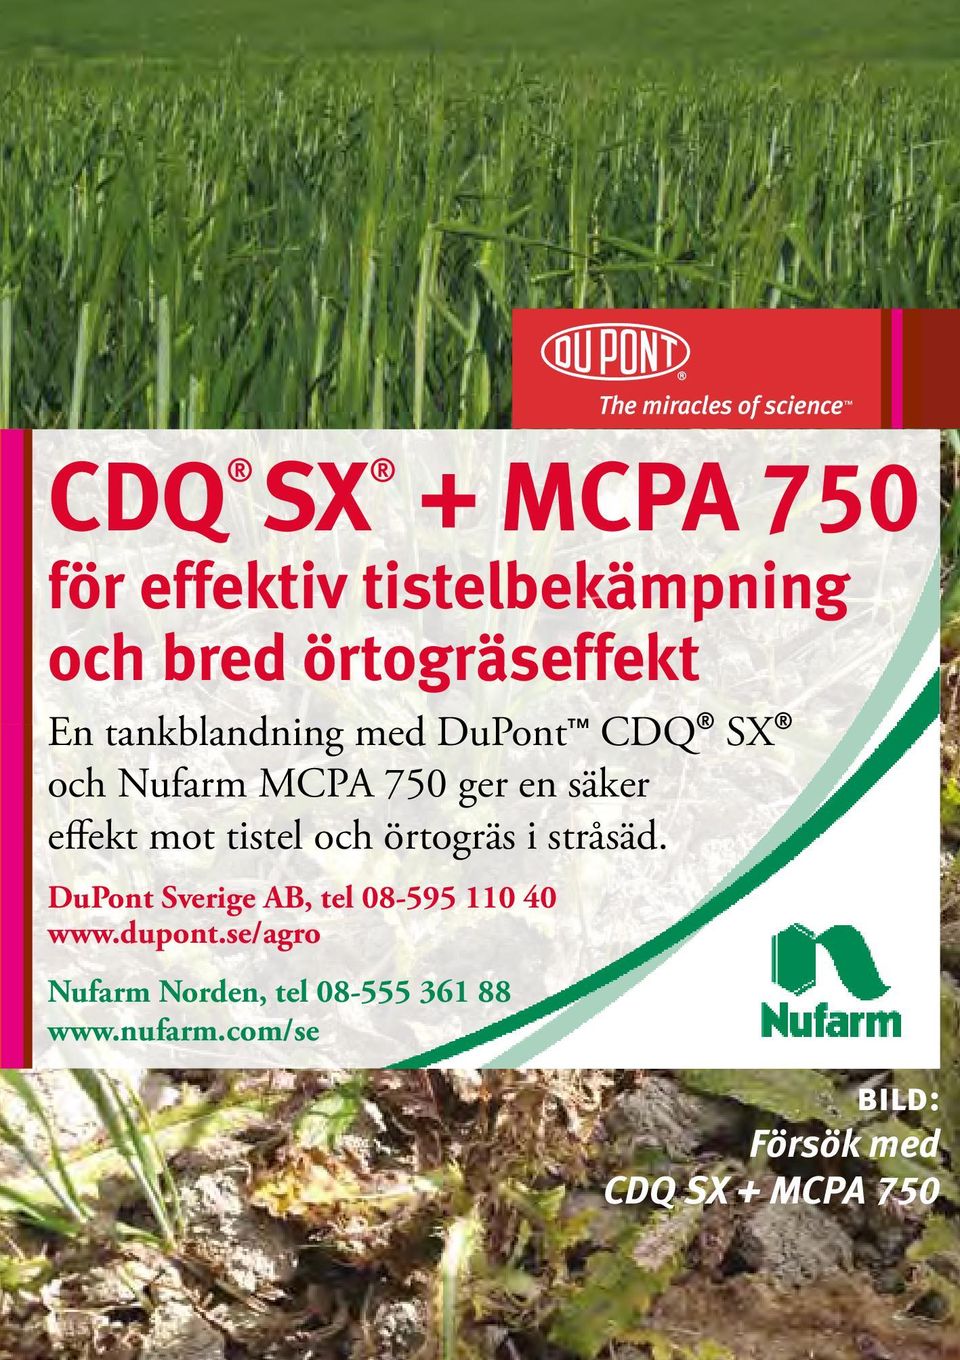 tistel och örtogräs i stråsäd. DuPont Sverige AB, tel 08-595 110 40 www.dupont.